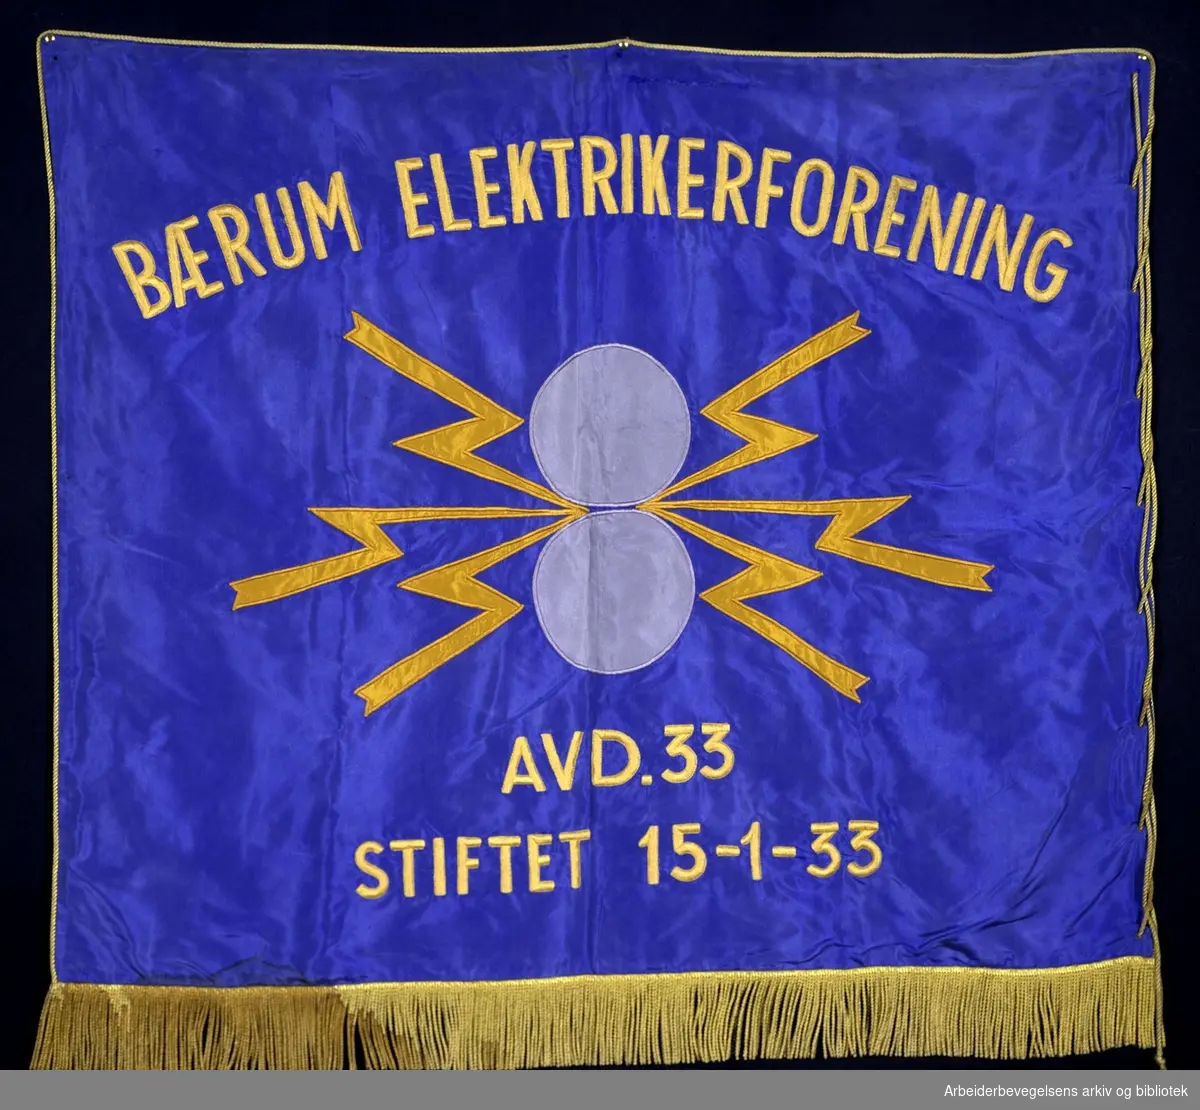 Bærum elektrikerforening avd 33.Stiftet 15. januar 1933..Forside..Fanetekst: Bærum Elektrikerforening avd. 33..Stiftet 15 - 1 - 33..Baksiden er lik